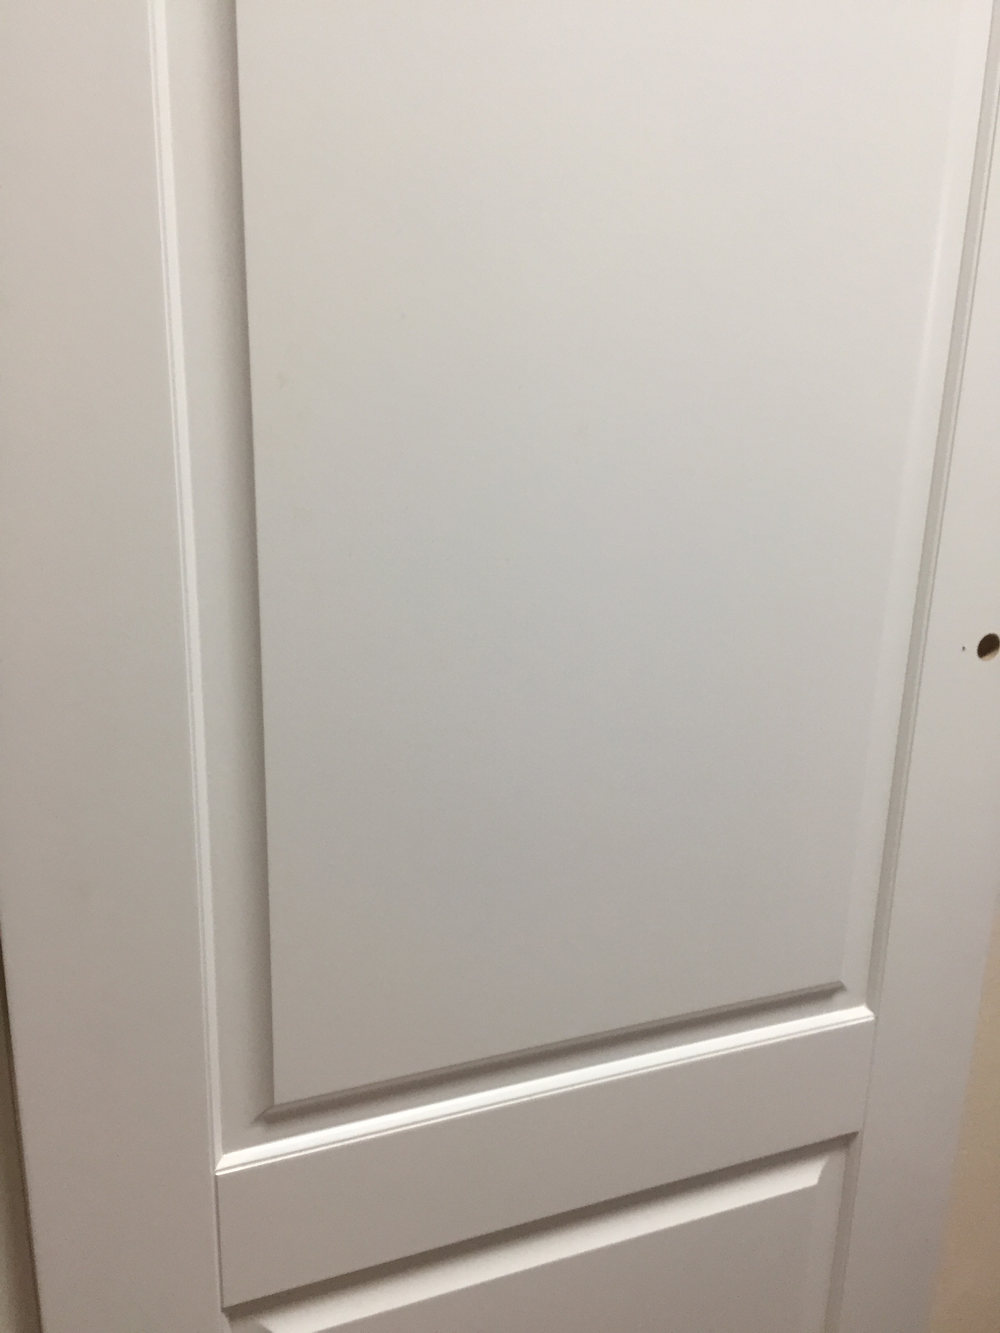 Межкомнатная дверь VFD (ВФД)  Dorren (Доррен) Polar (эмаль белая) ДГ